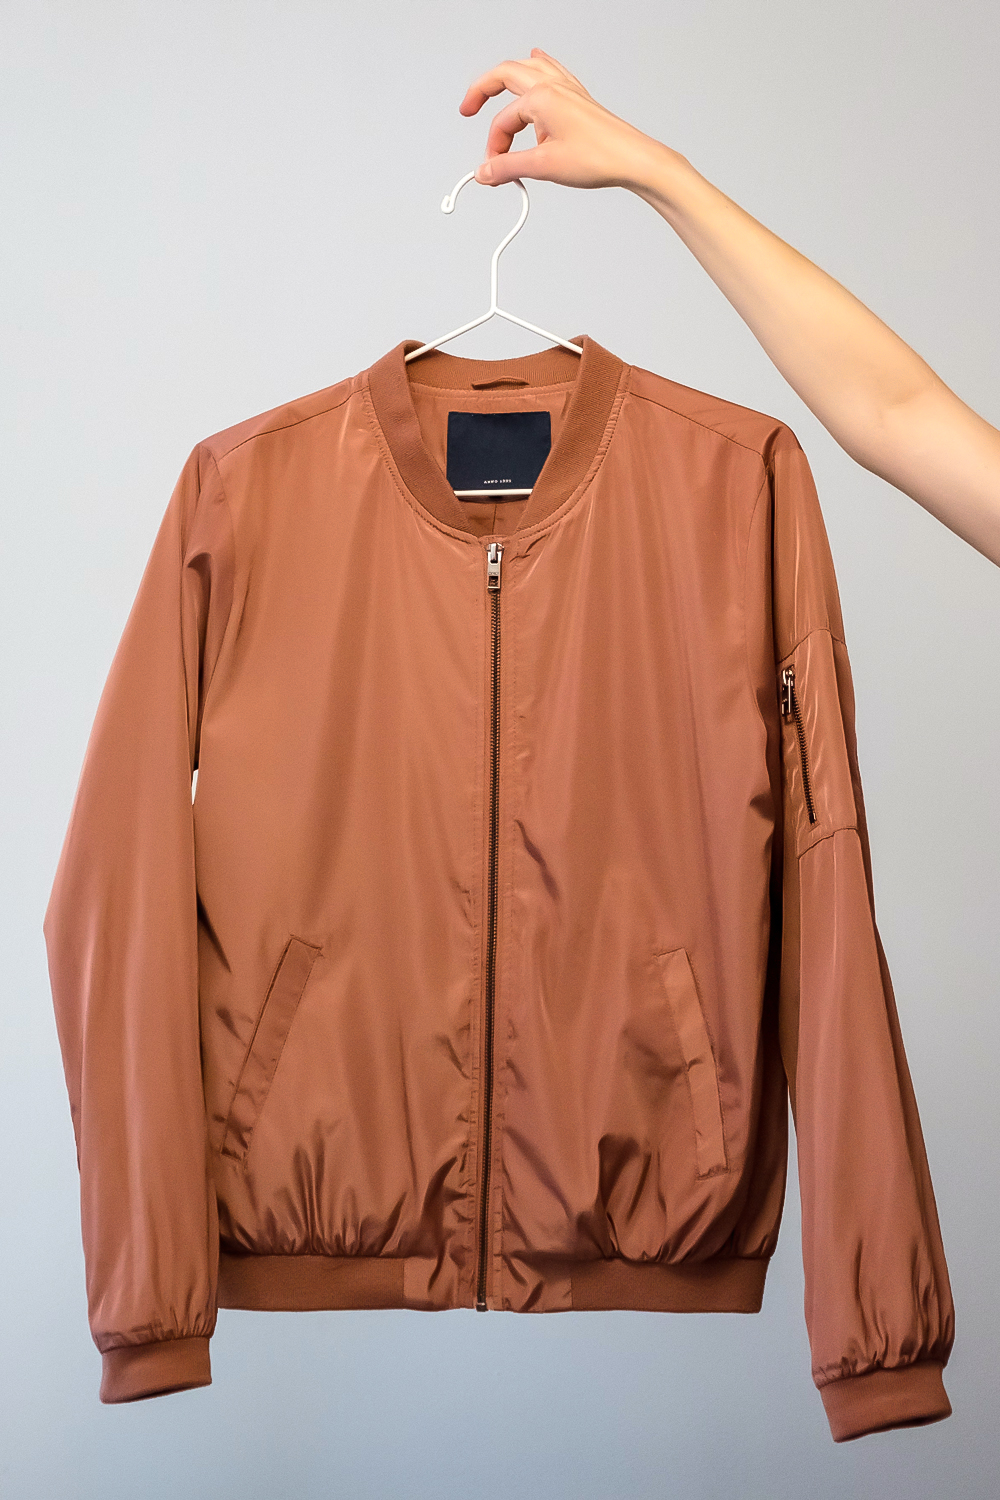 bomber jacket on clothing hanger